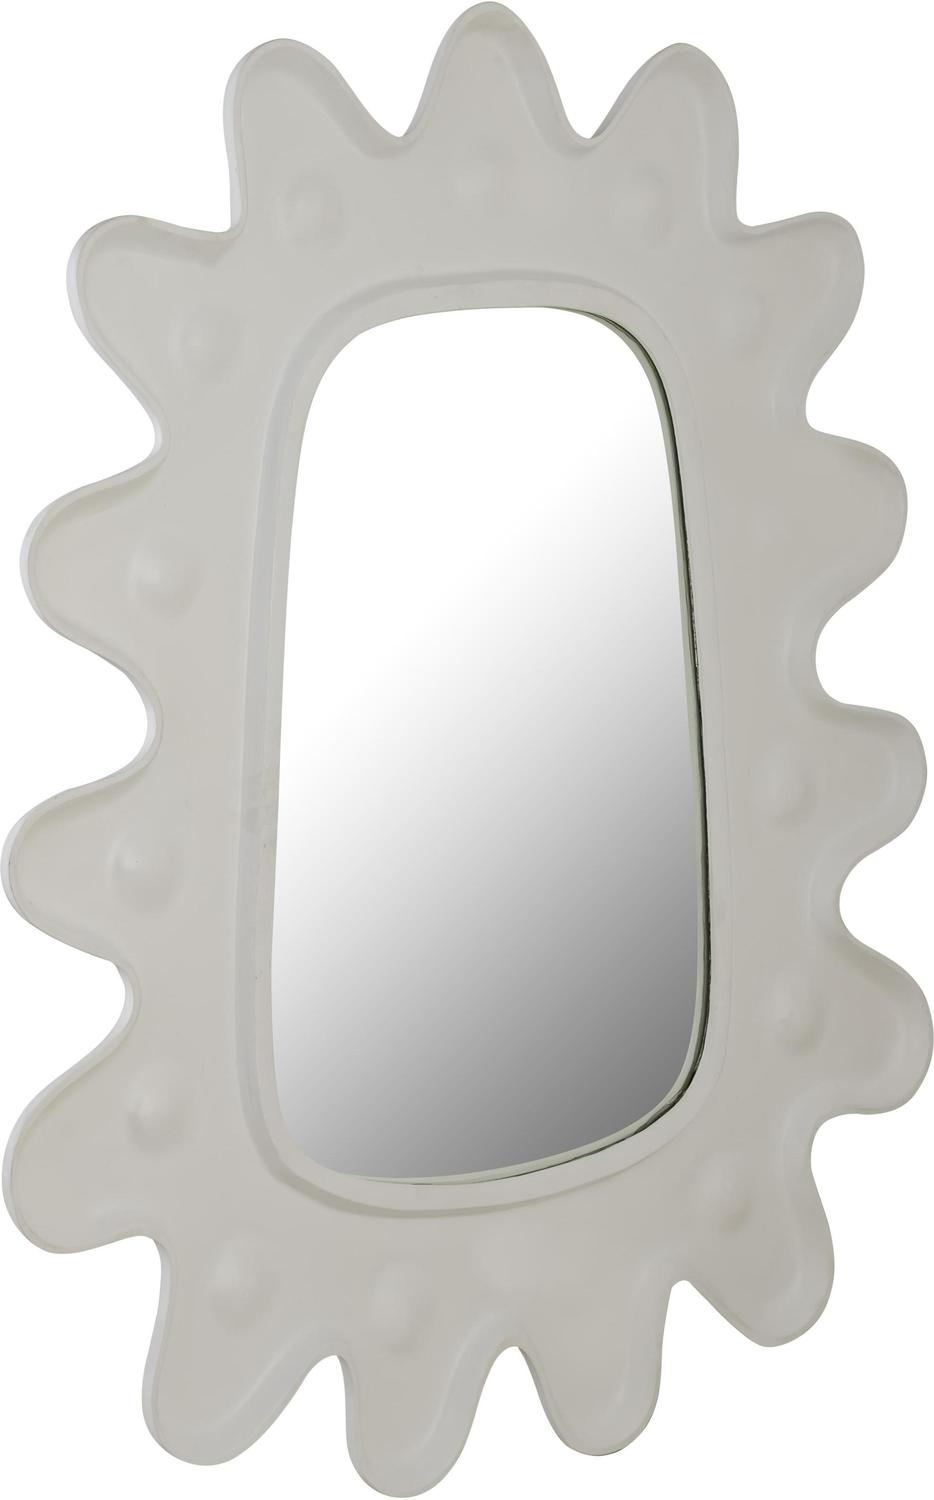 victorian mirror oval Contemporary Design Furniture Mirrors White